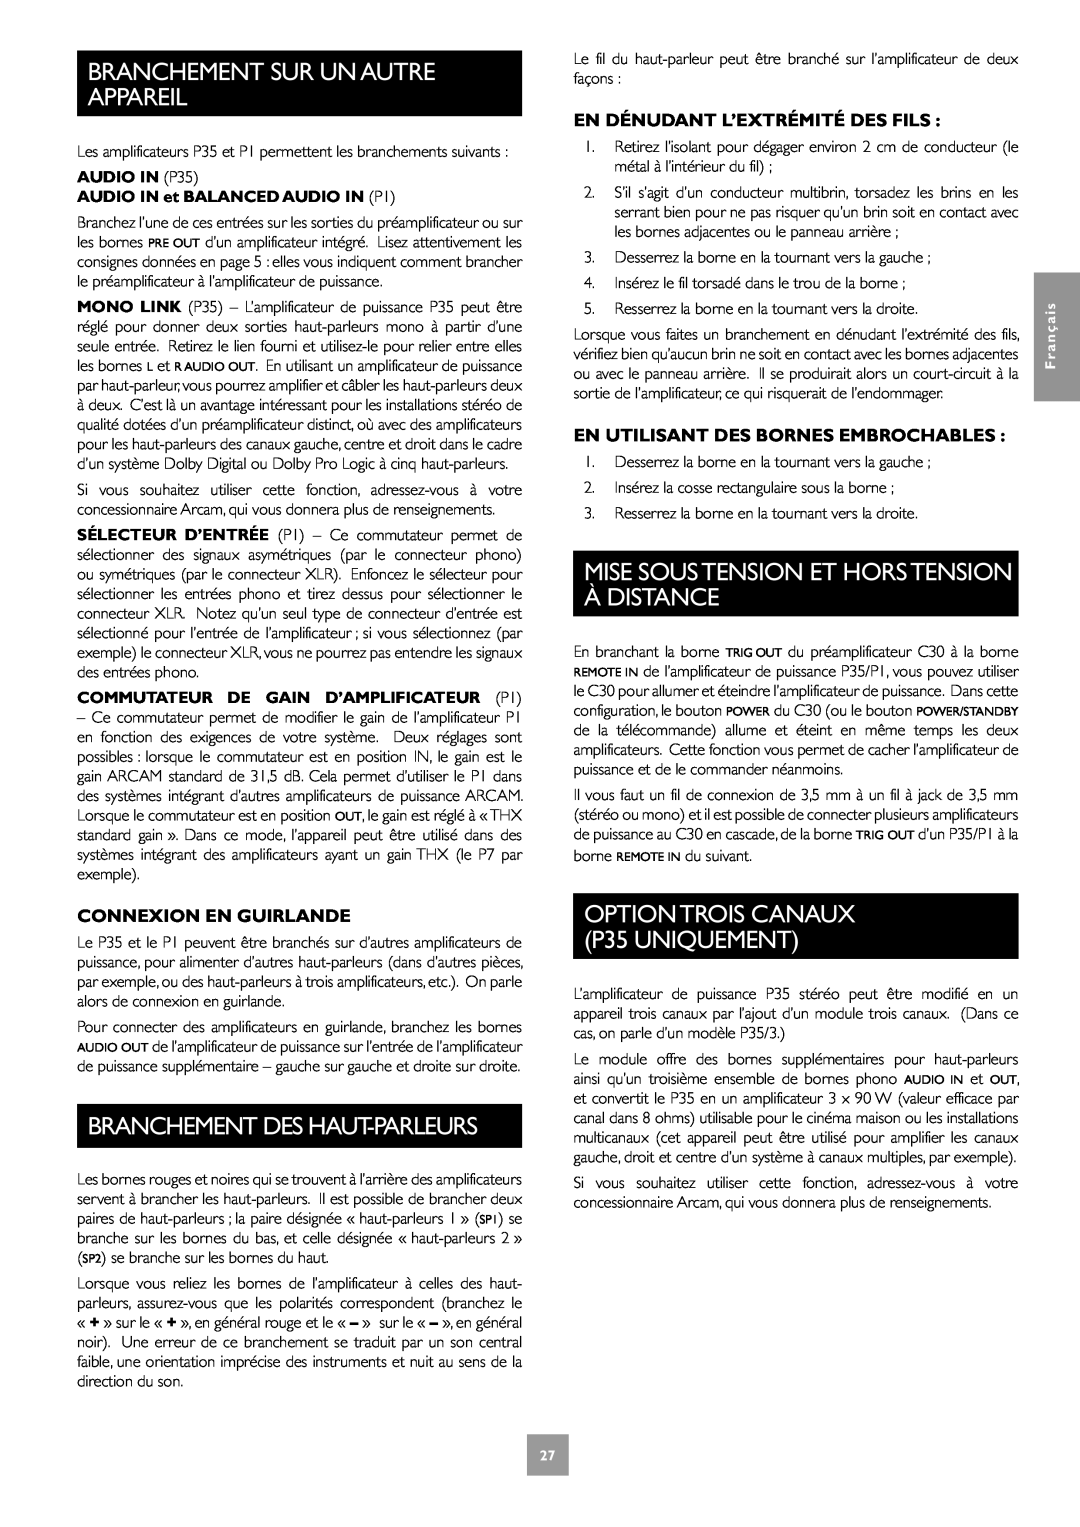 Arcam P1 Branchement Des Haut-Parleurs, Mise Soustension Et Horstension À Distance, OPTIONTROIS CANAUX P35 UNIQUEMENT 